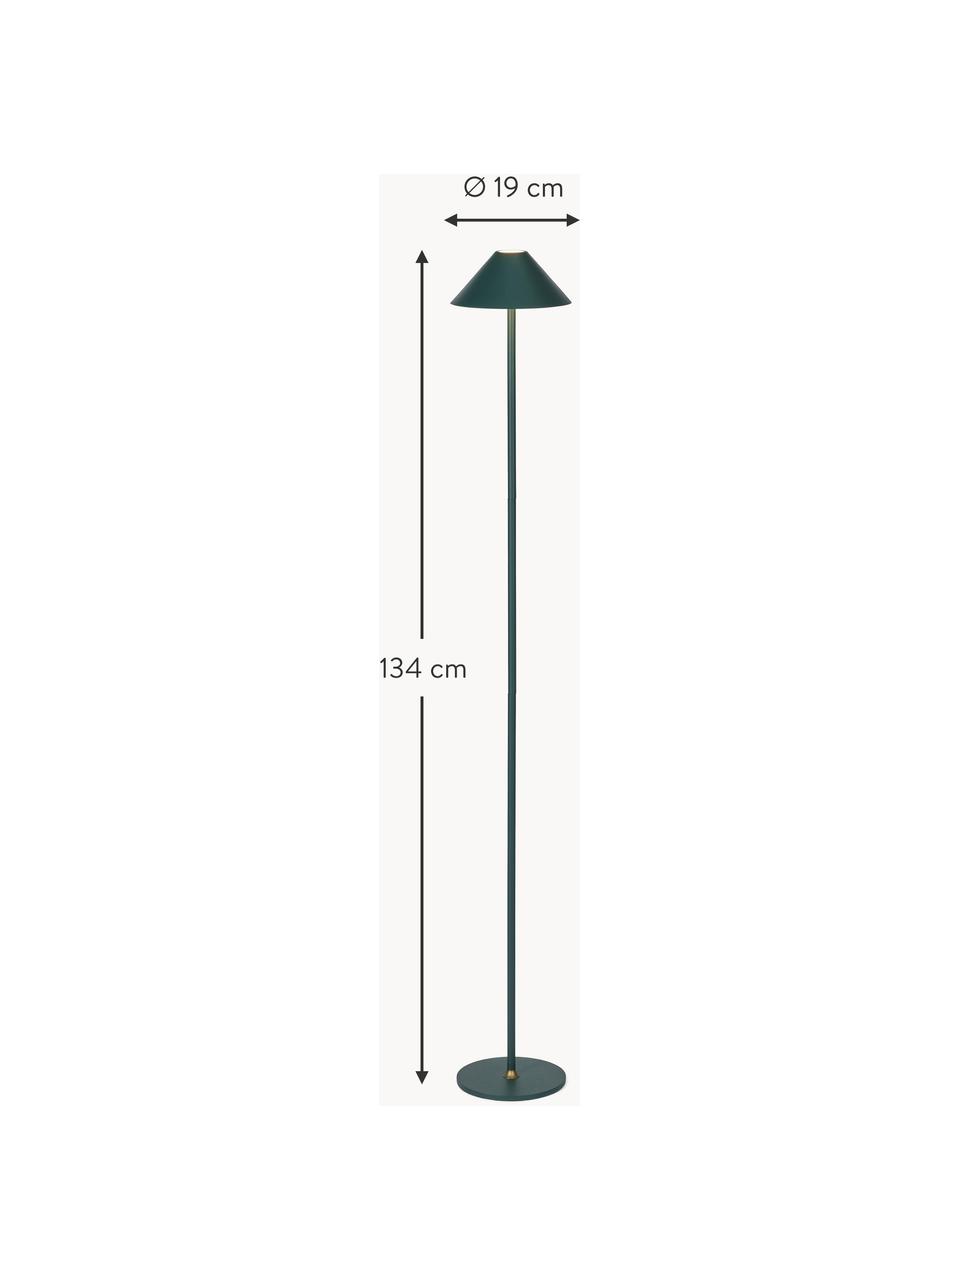 Mobilna lampa podłogowa LED z funkcją przyciemniania Hygge, Metal powlekany, Ciemny zielony, W 134 cm